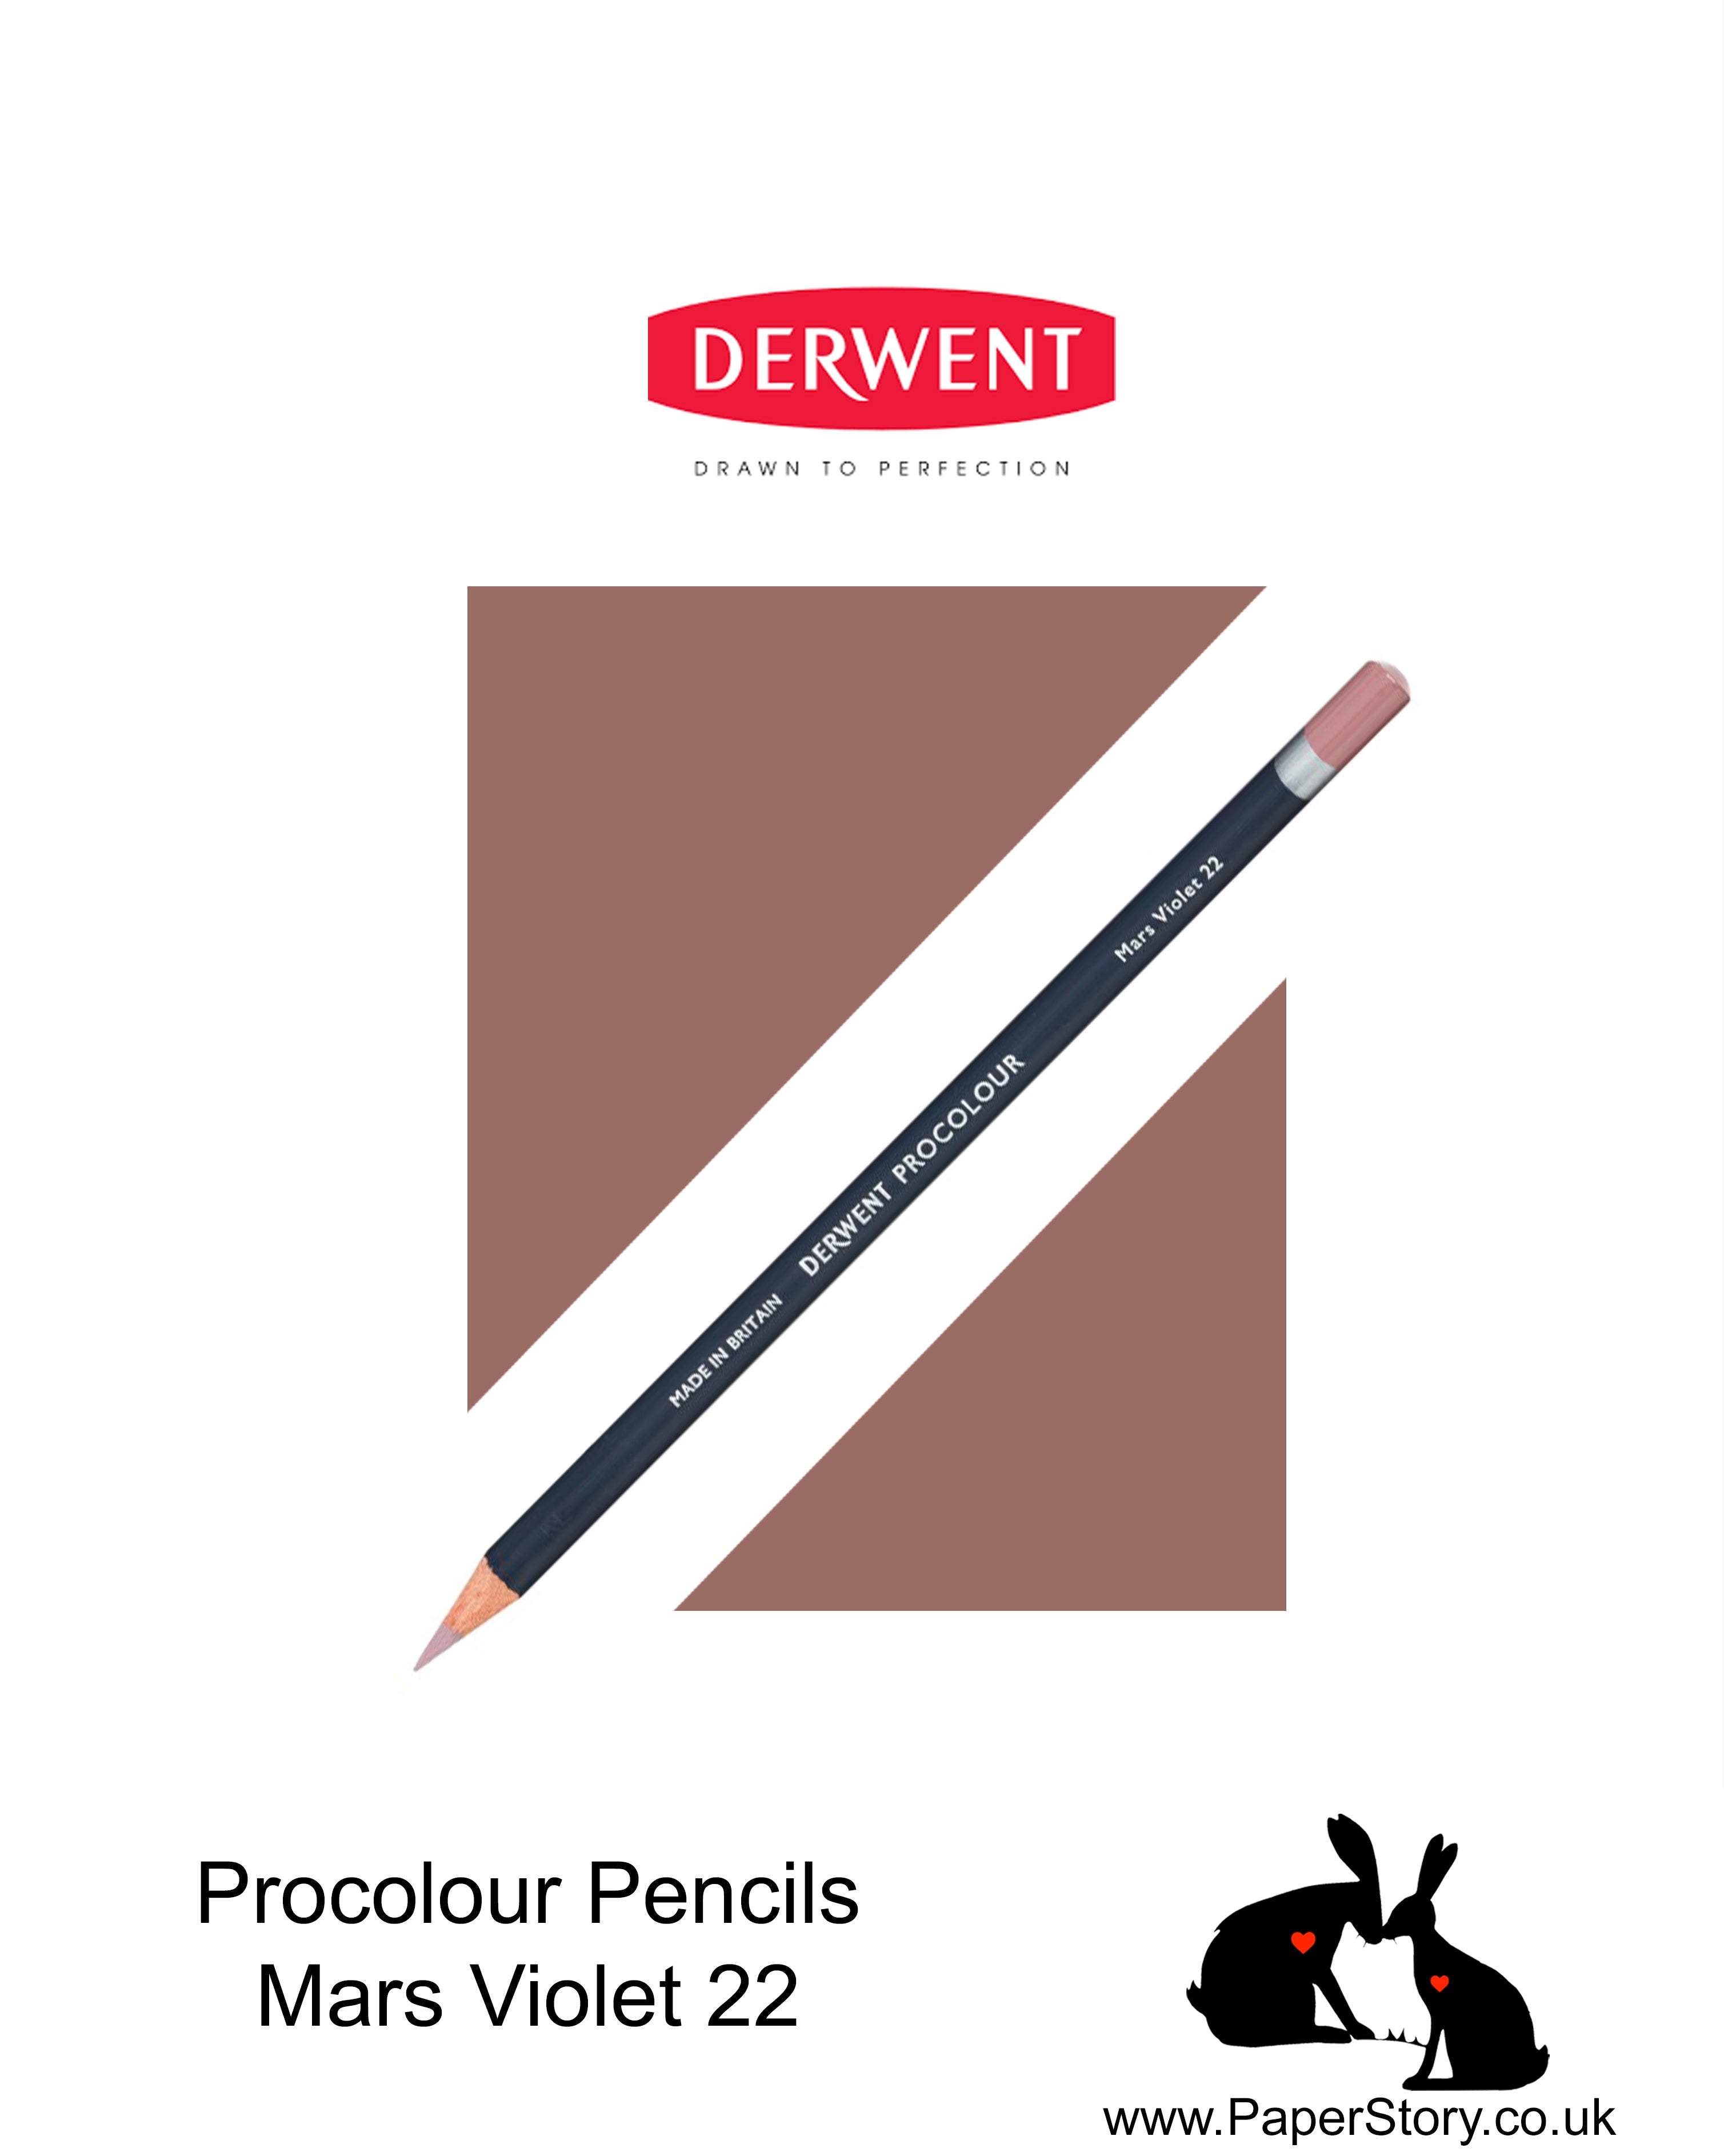 Derwent Procolour pencil Mars Violet 22